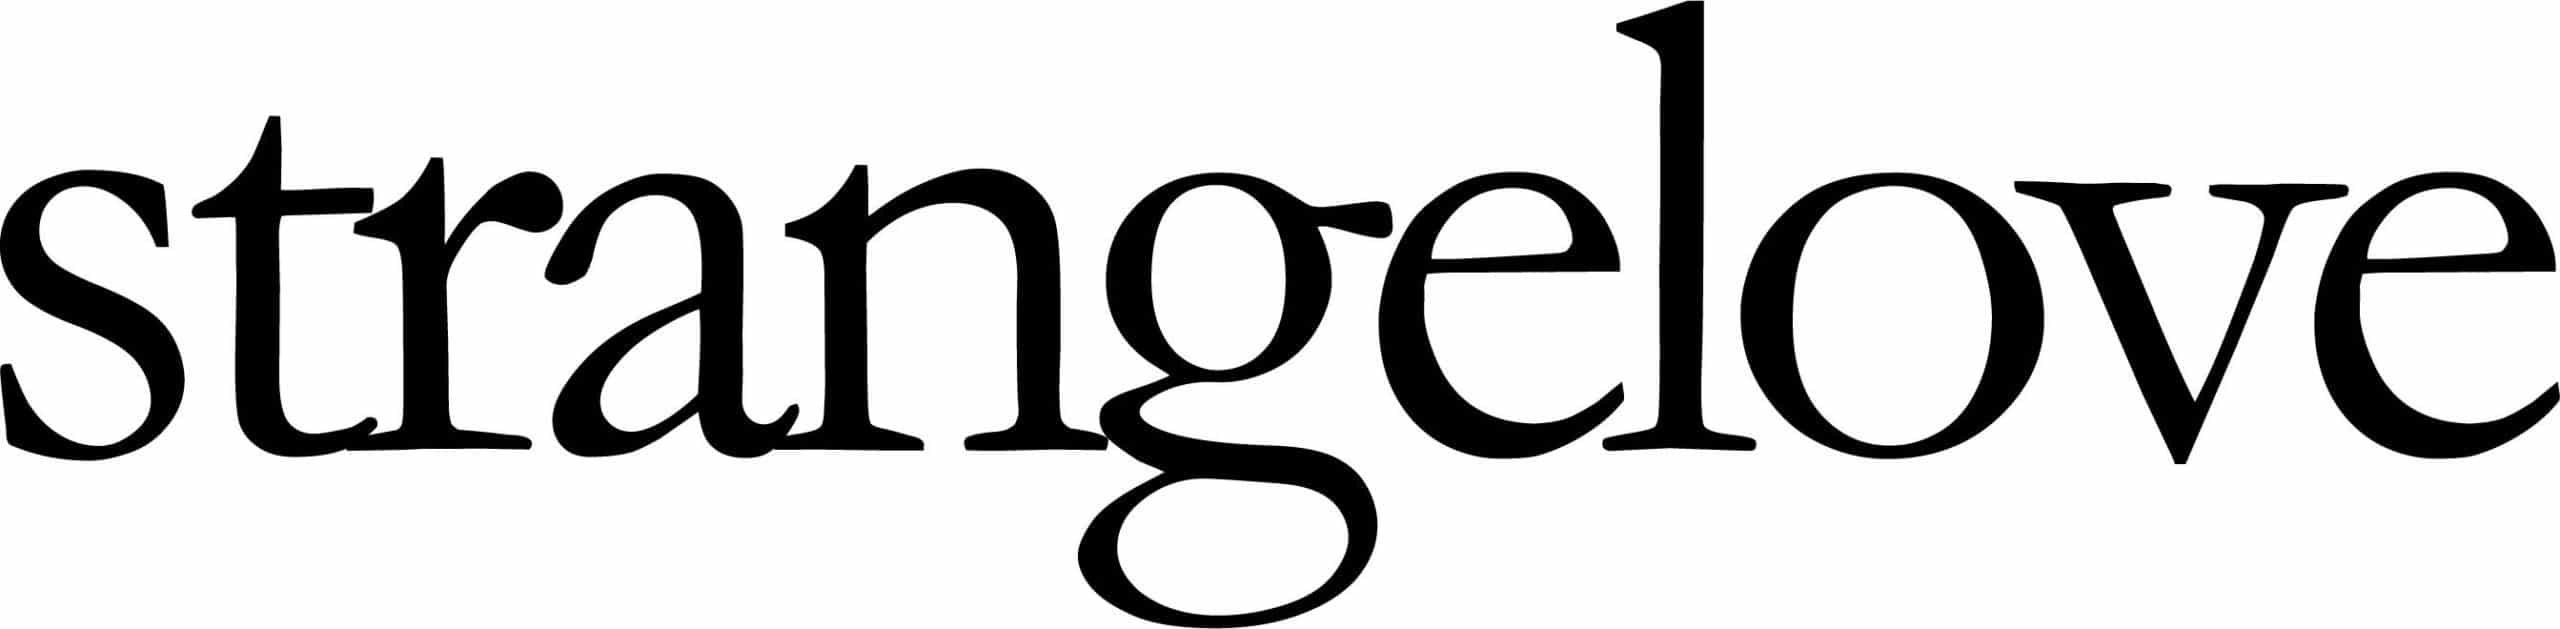 strangelove logo